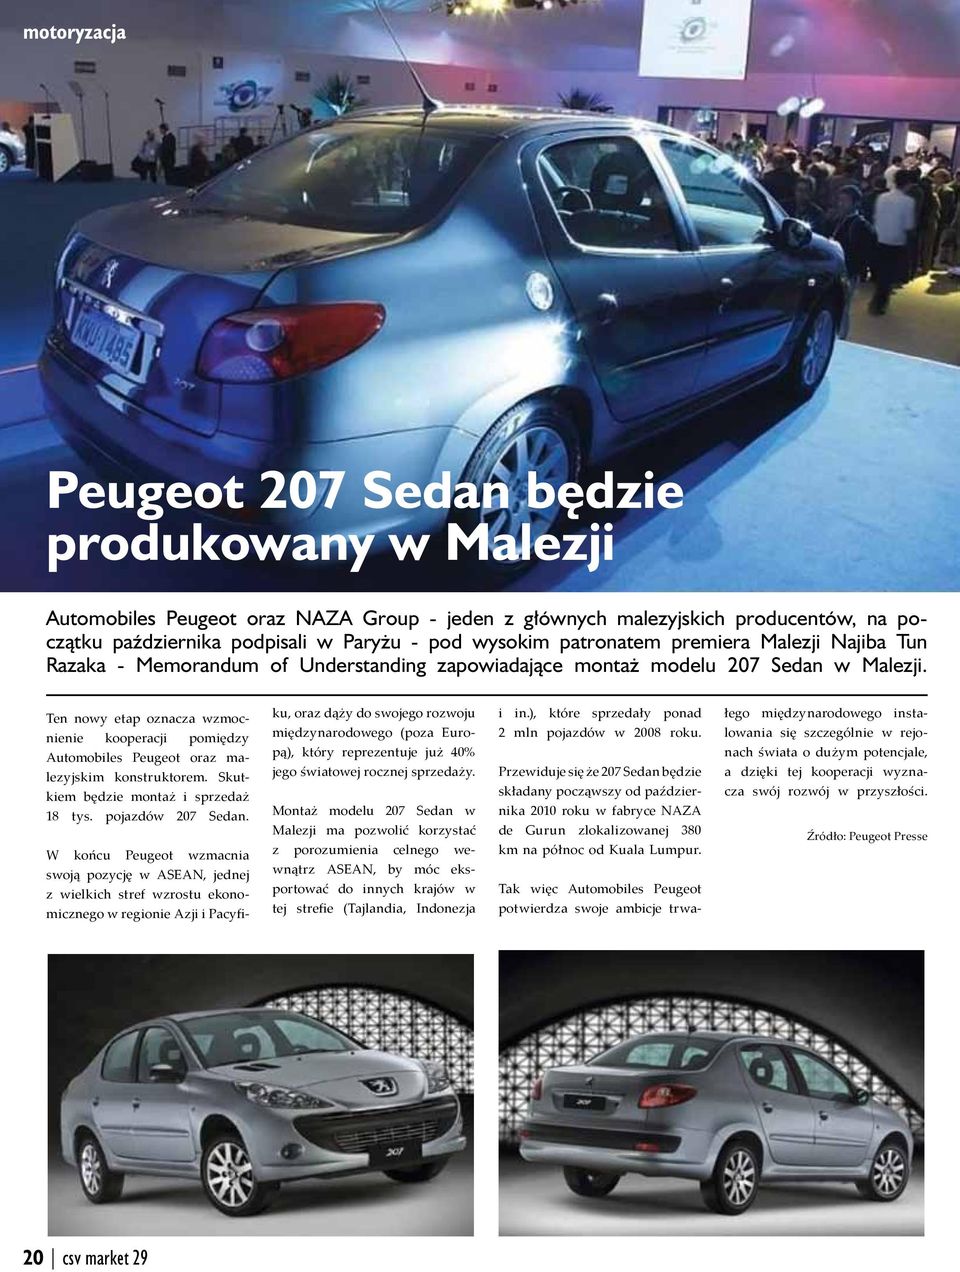 Ten nowy etap oznacza wzmocnienie kooperacji pomiędzy Automobiles Peugeot oraz malezyjskim konstruktorem. Skutkiem będzie montaż i sprzedaż 18 tys. pojazdów 207 Sedan.